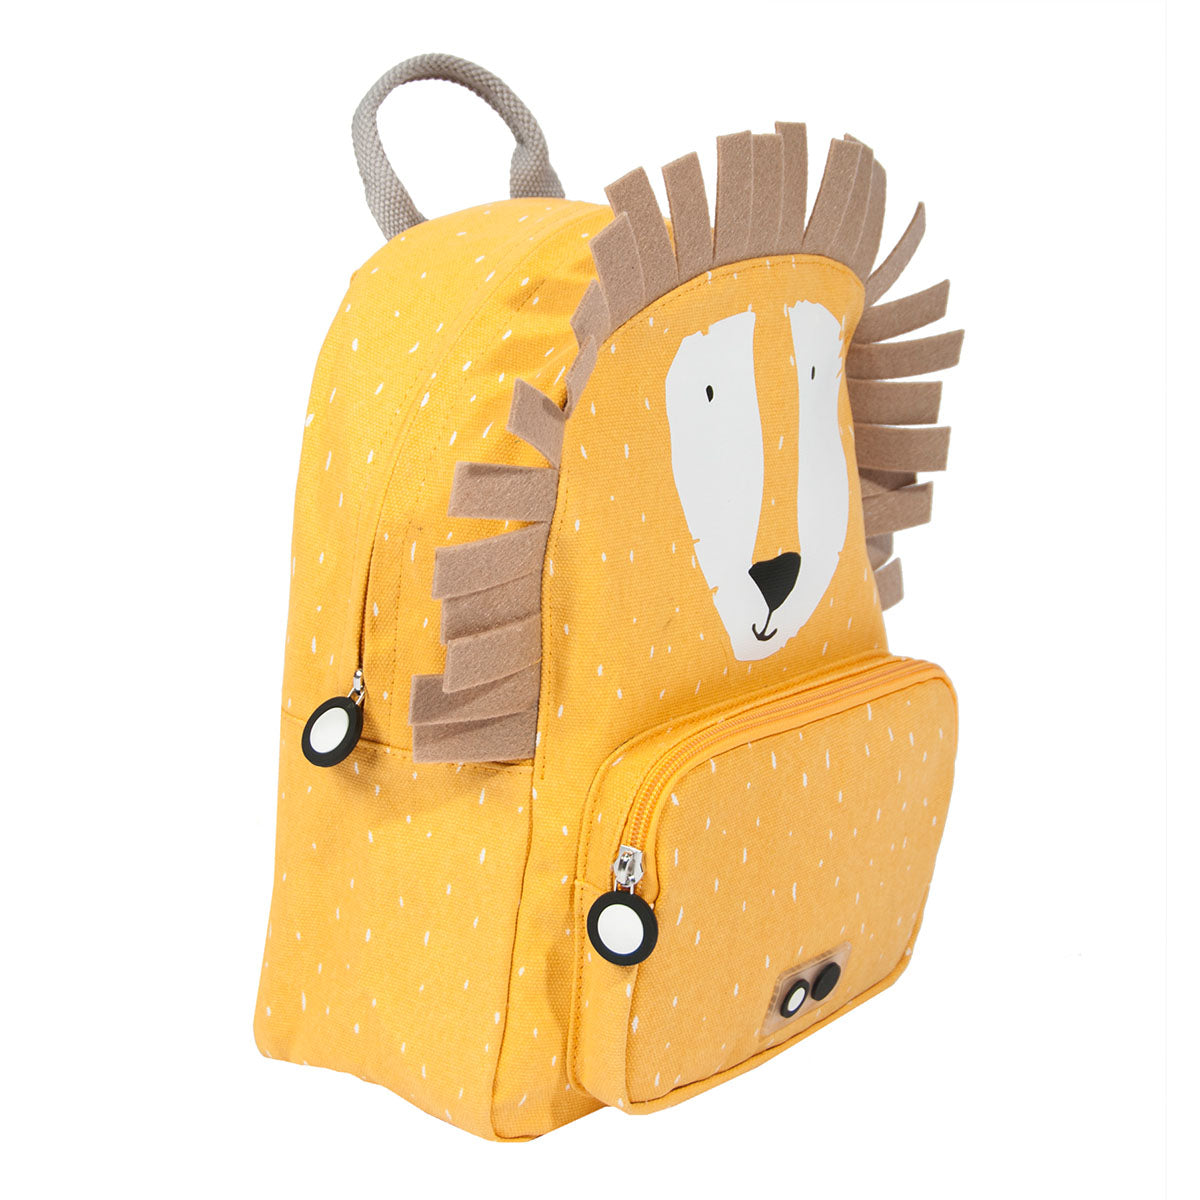 Met de Trixie Mr. Lion rugzak klein ben je klaar voor avontuur! In deze gele schooltas kan je al je spulletjes kwijt voor een dagje weg. De gele rugzak komt in de vorm van een stoere leeuw. VanZus.